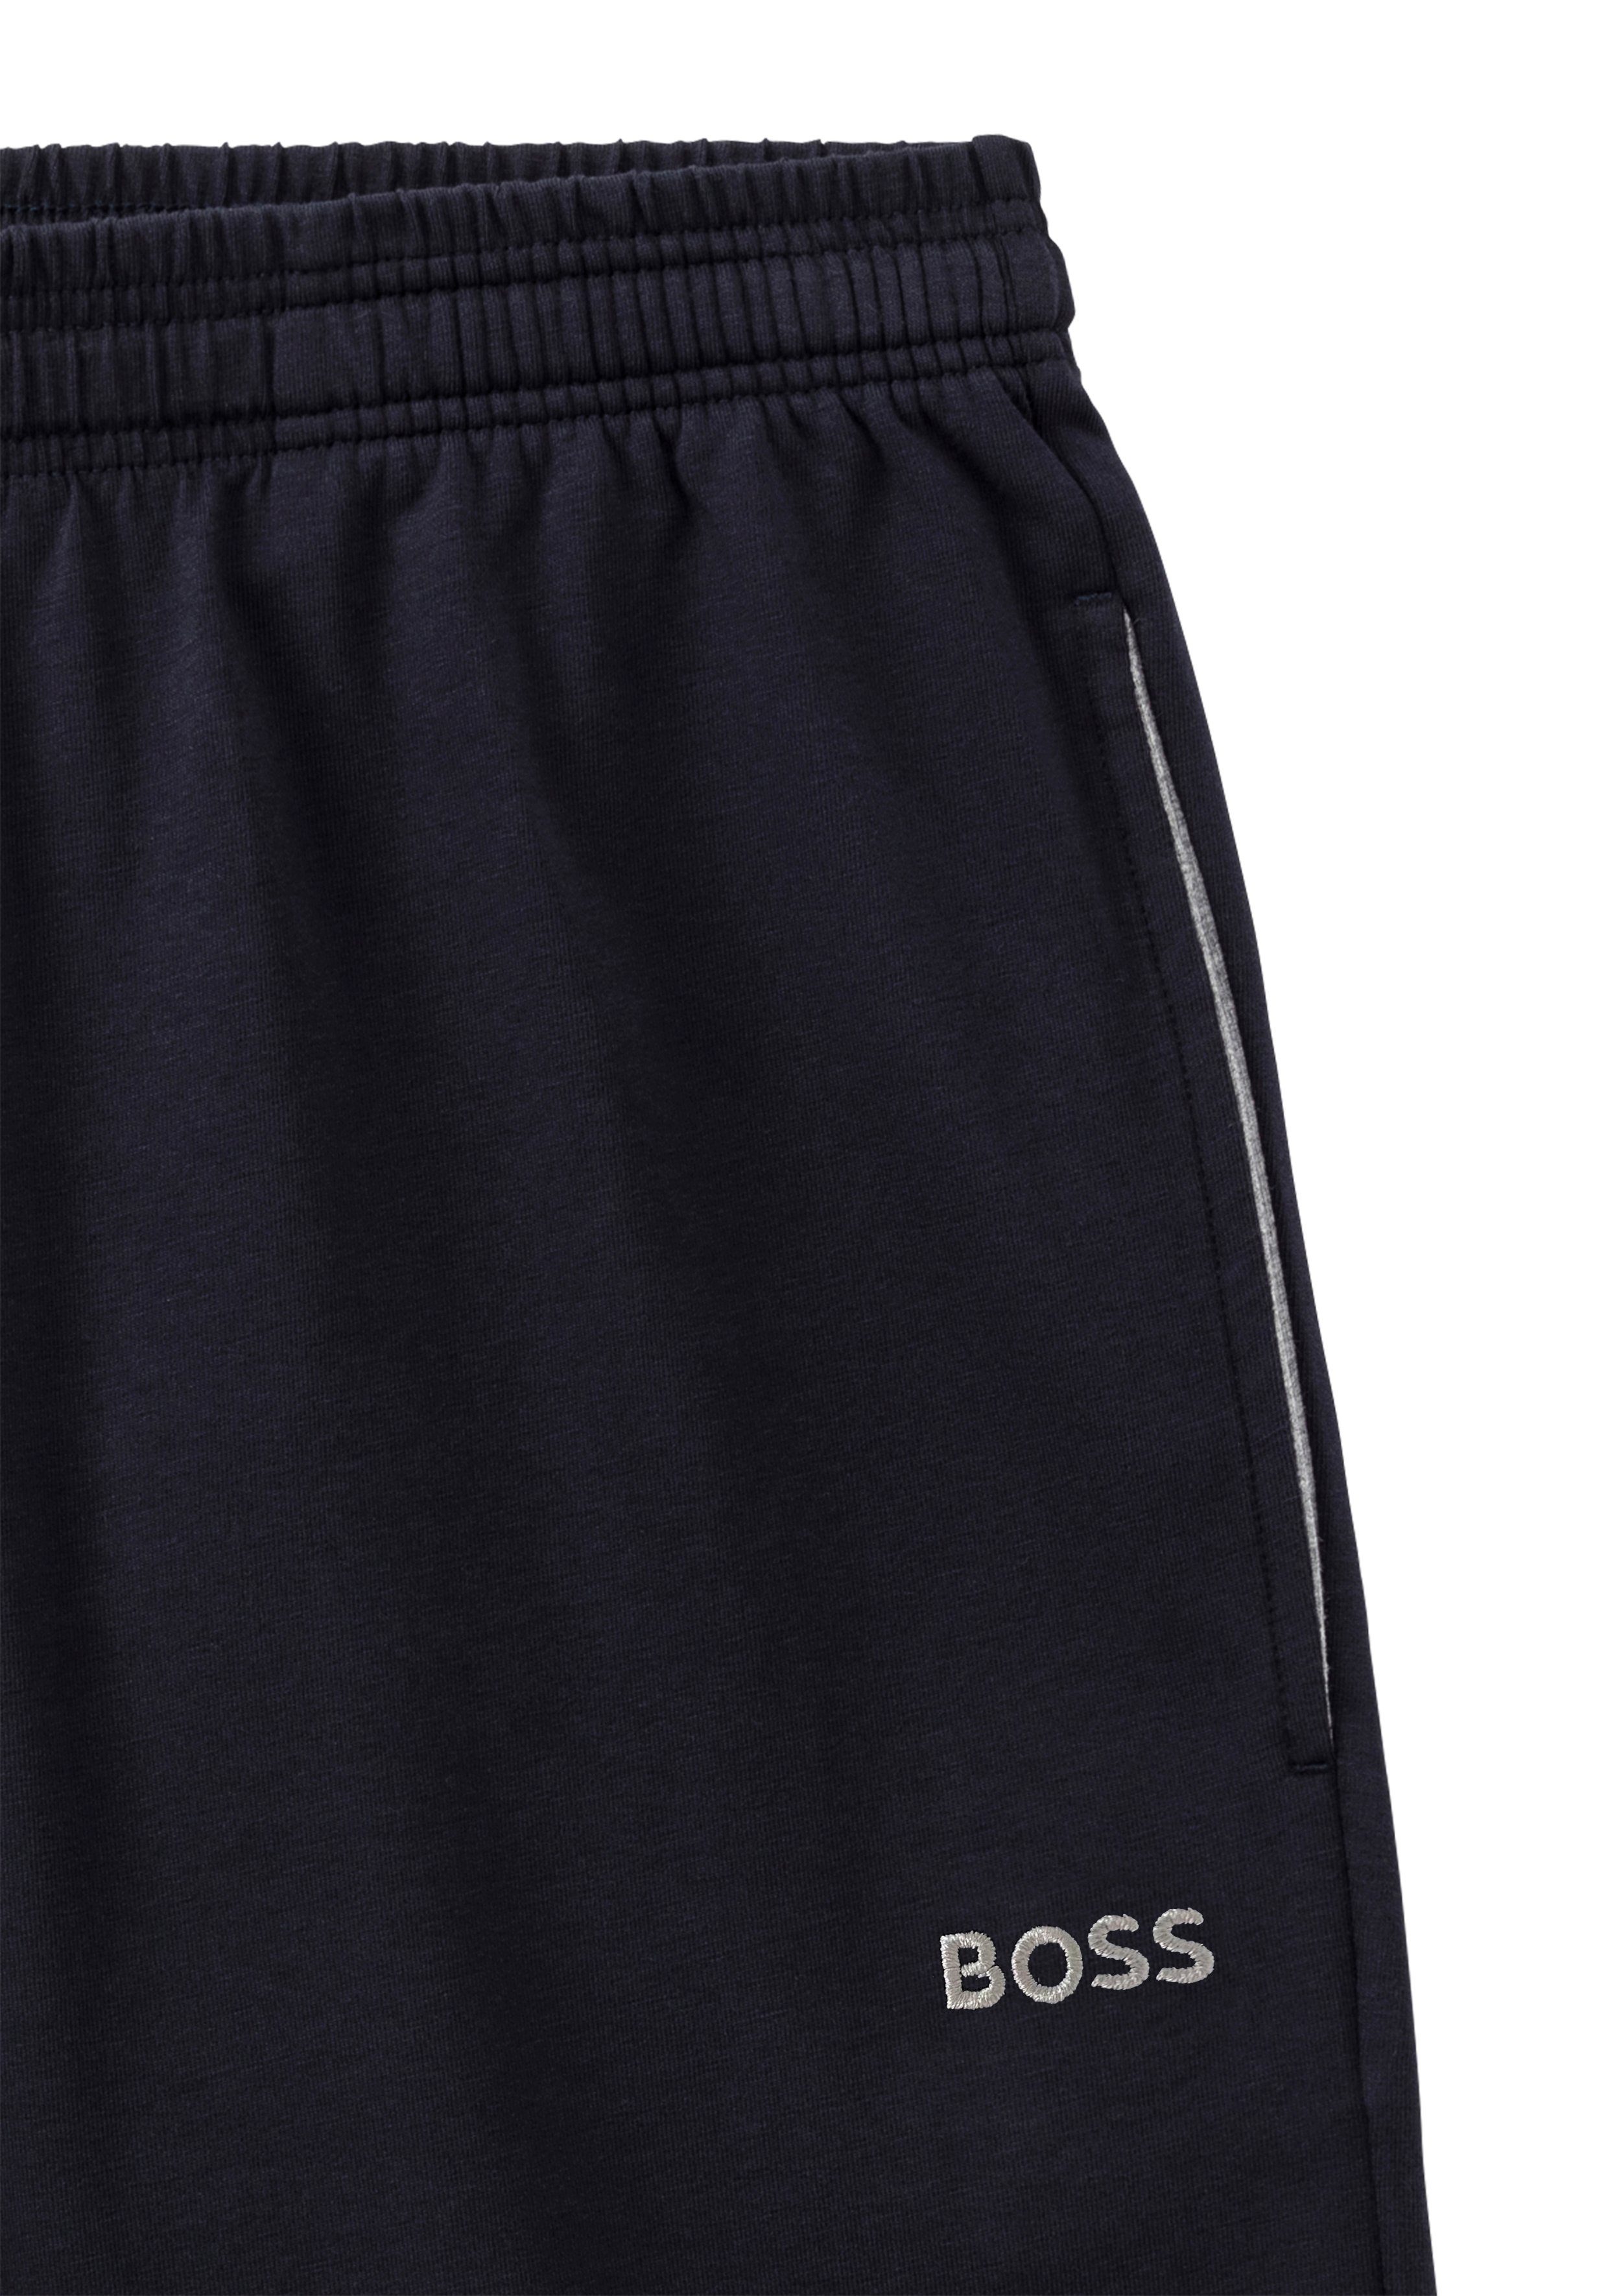 BOSS Shorts dezenter BOSS navy Mit Stickerei